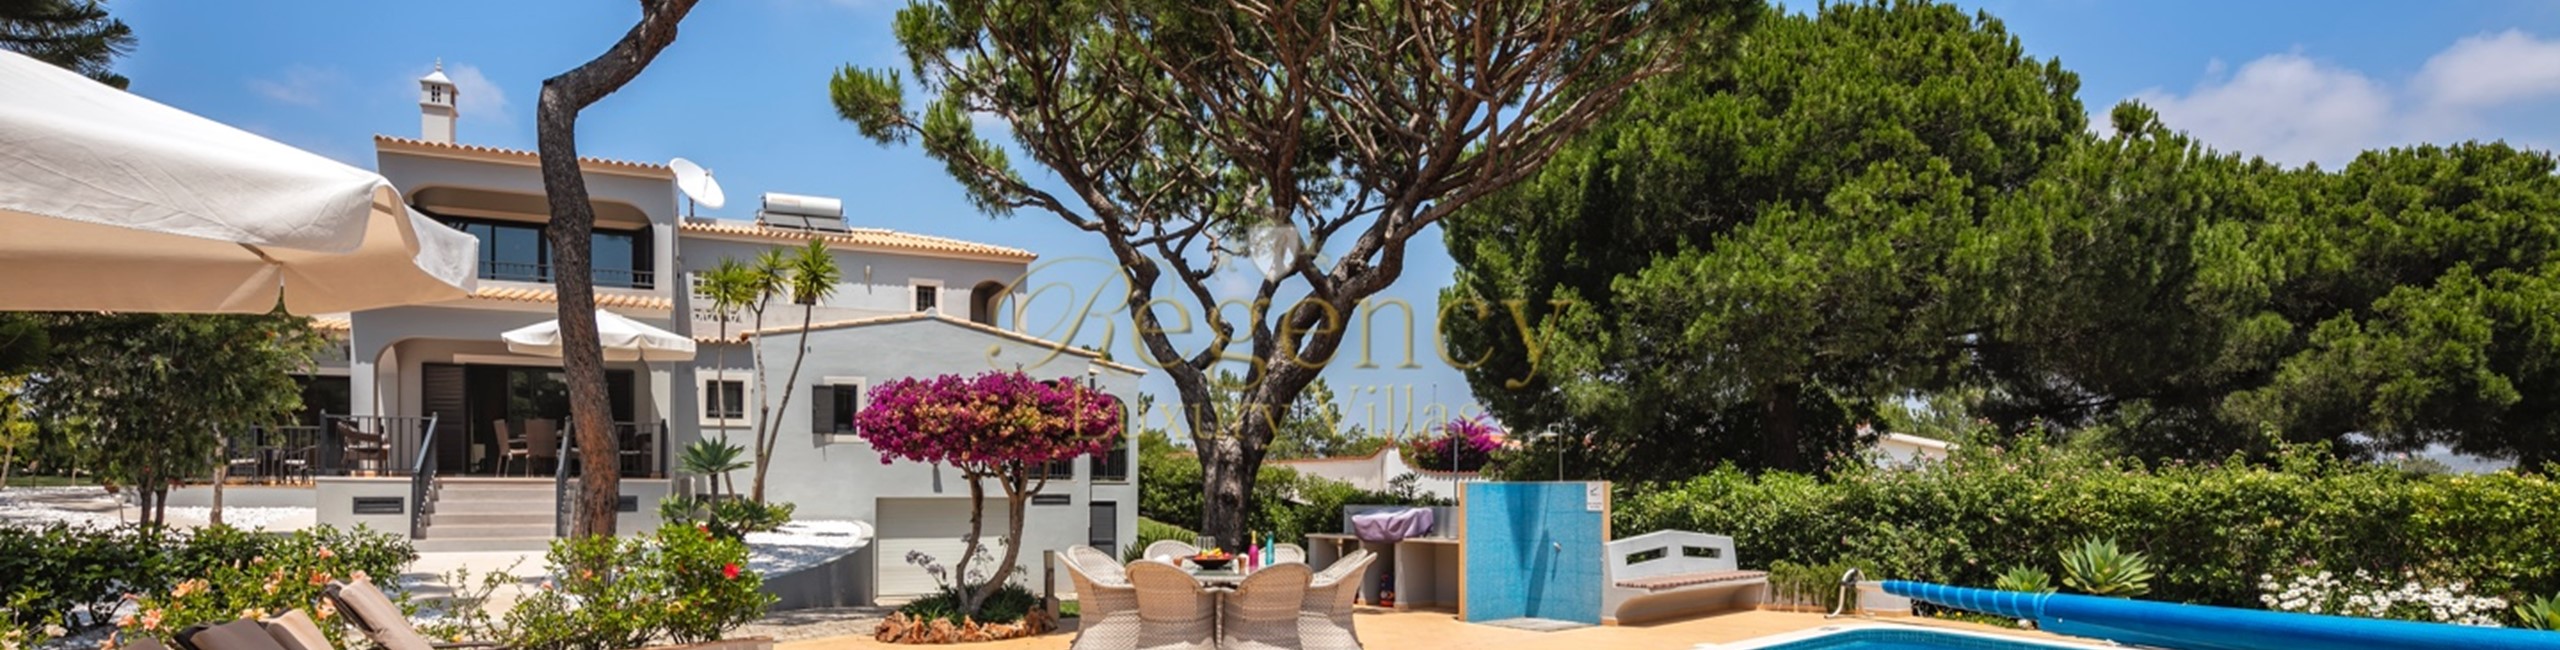 Luxury Villas To Rent In Vilamoura